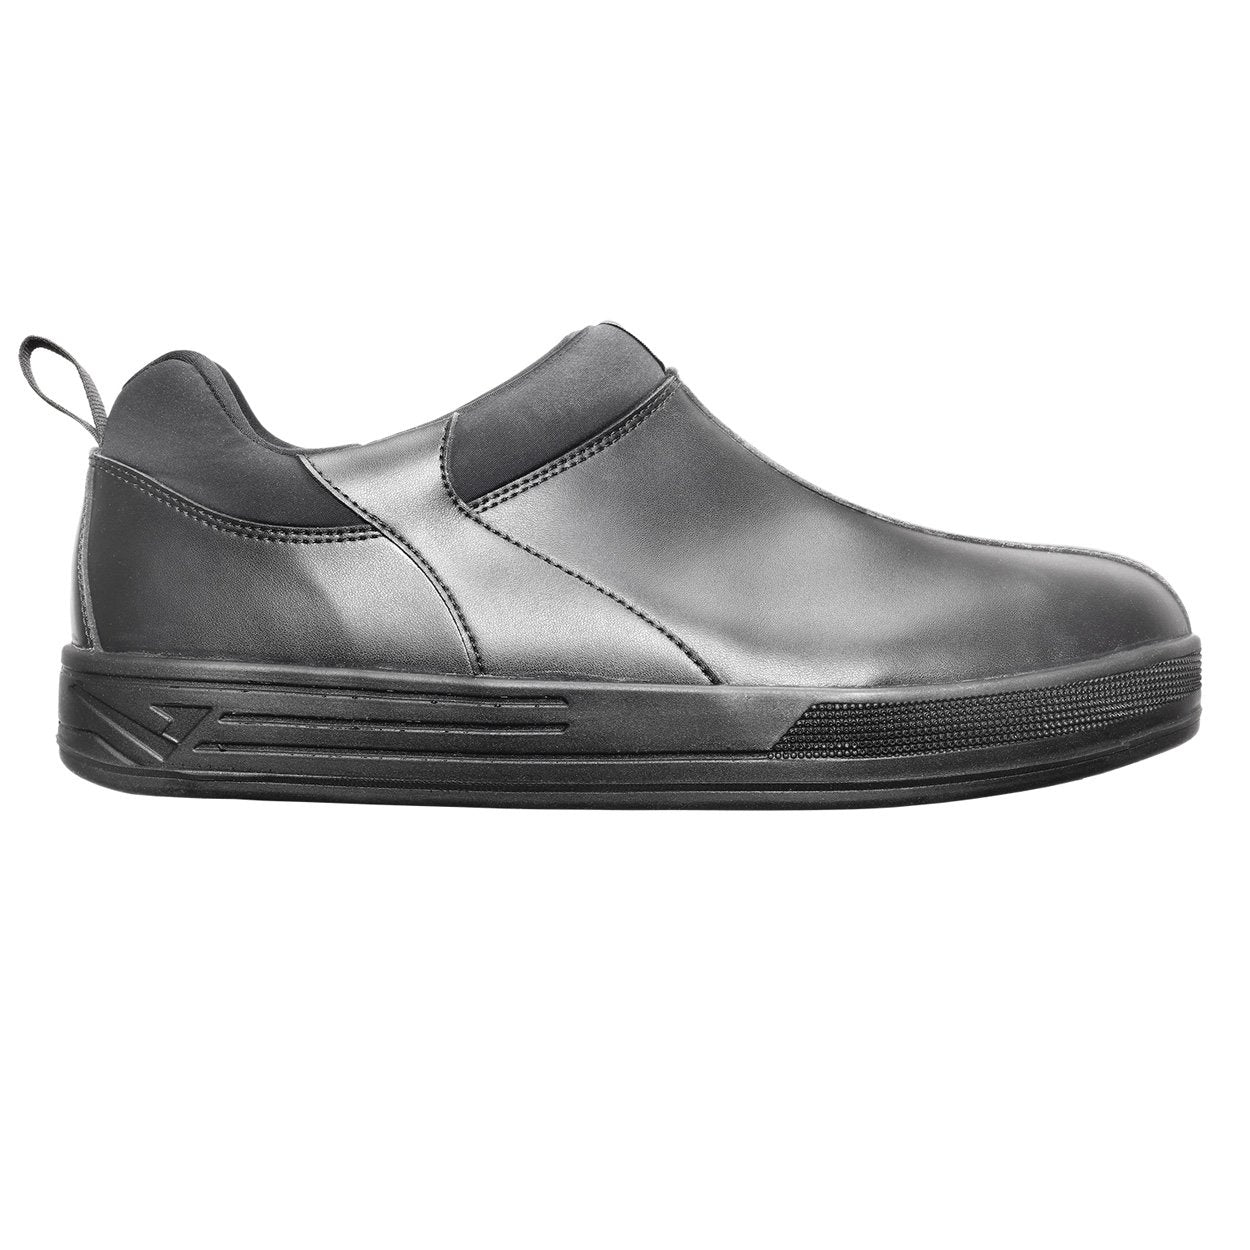 Chaussure de cuisine - Viper noire - Taille 39 - Clément Design